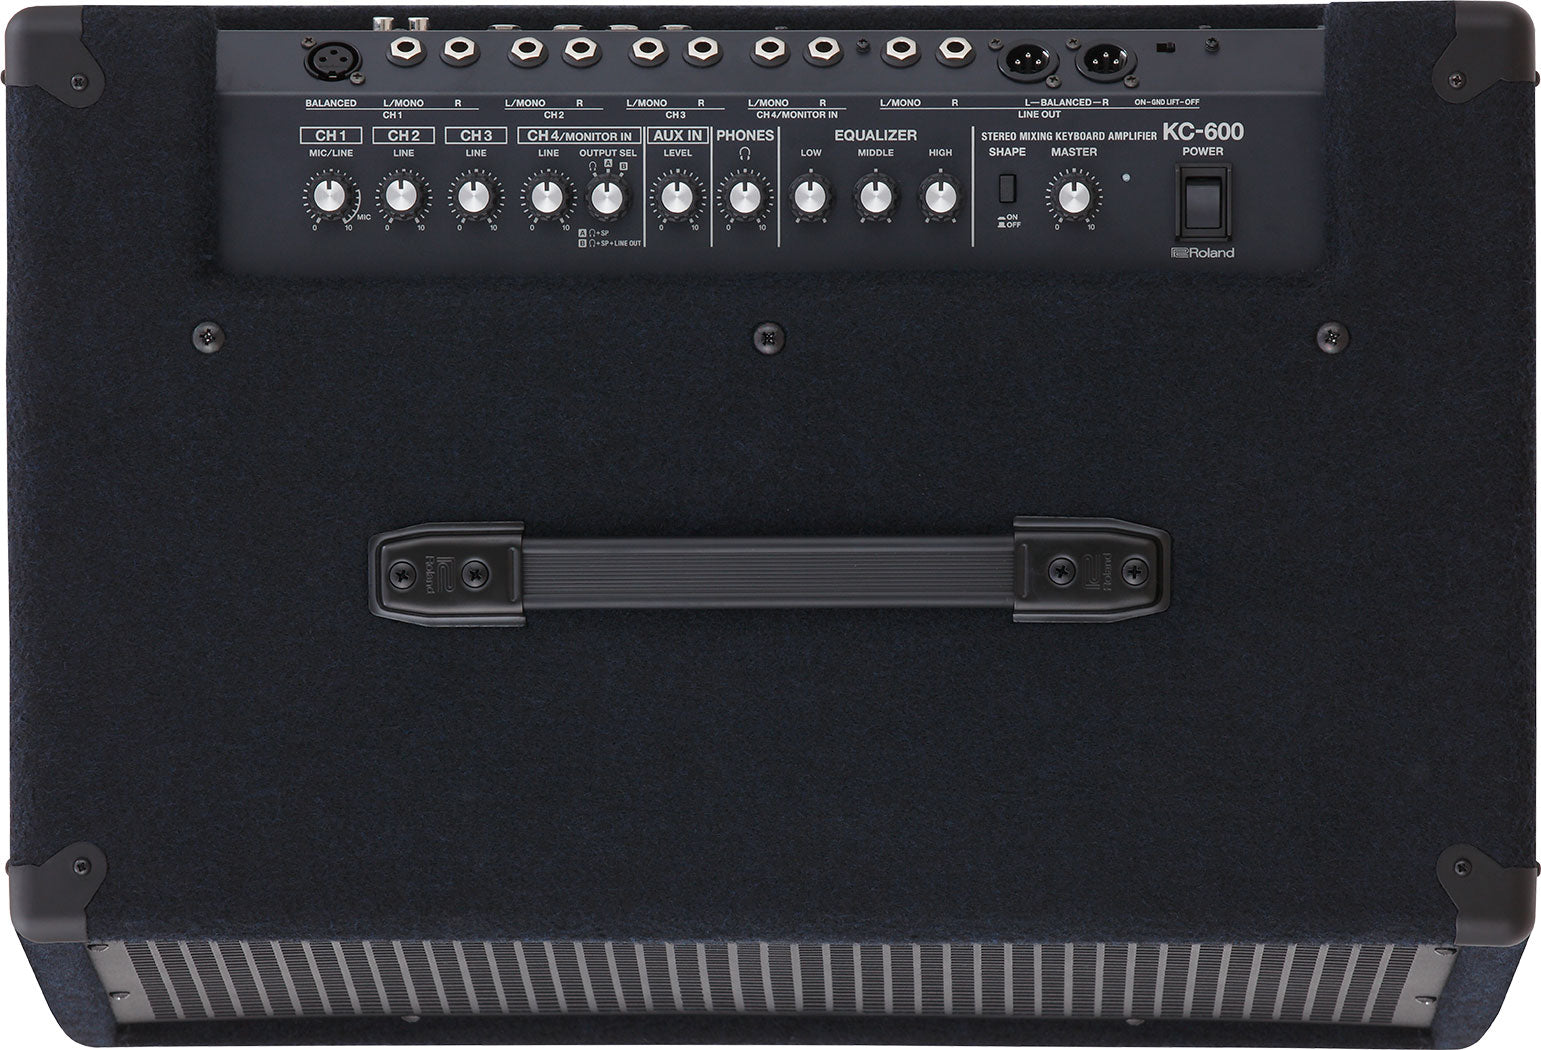 KC-600 200w. Stereo Mixing Keyboard Amplifier